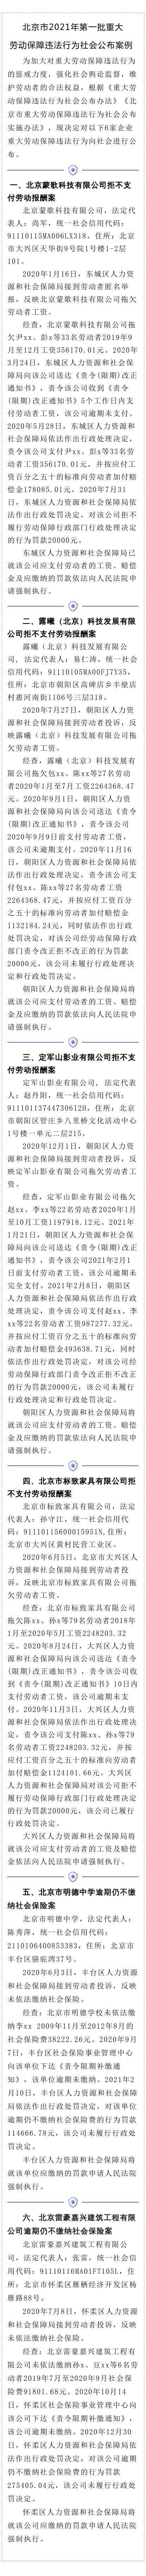 北京明德中学等6家单位被曝光存在重大劳动保障违法行为